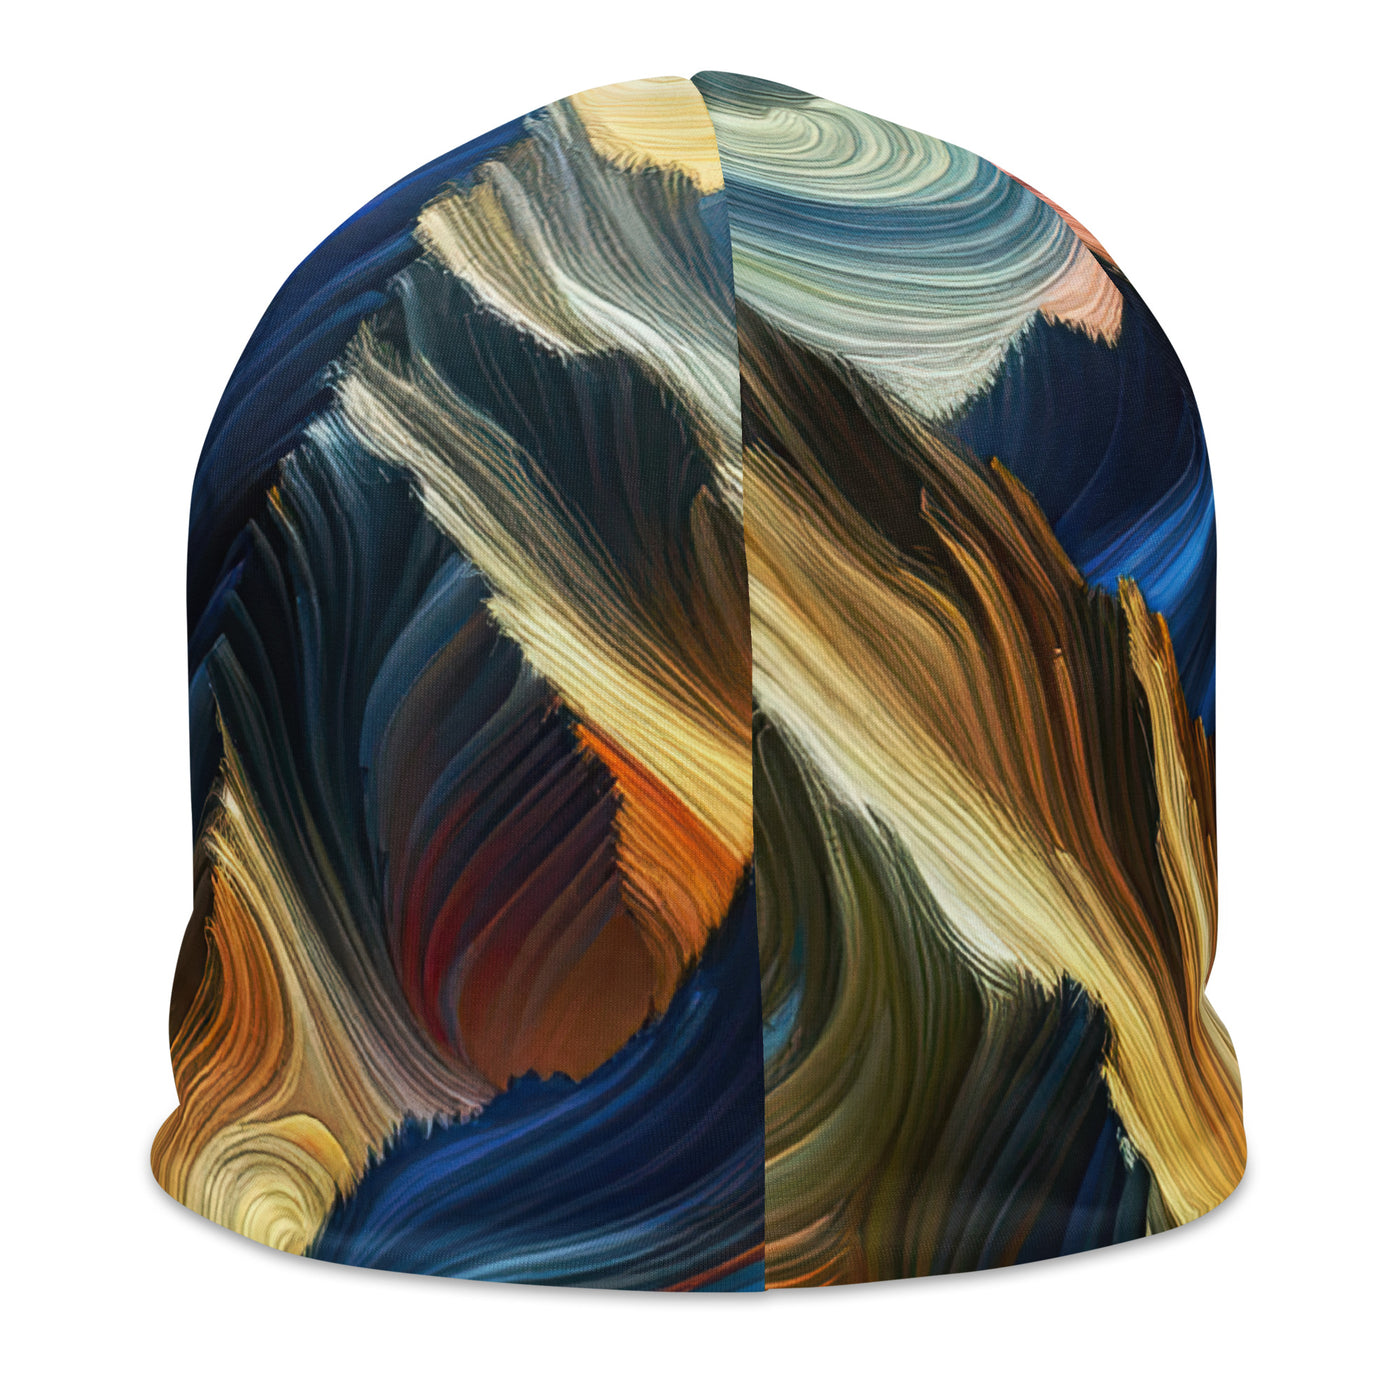 Abstraktes Kunstgemälde der Alpen mit wirbelnden, lebendigen Farben und dynamischen Mustern. Wanderer Silhouette - Beanie (All-Over Print) wandern xxx yyy zzz